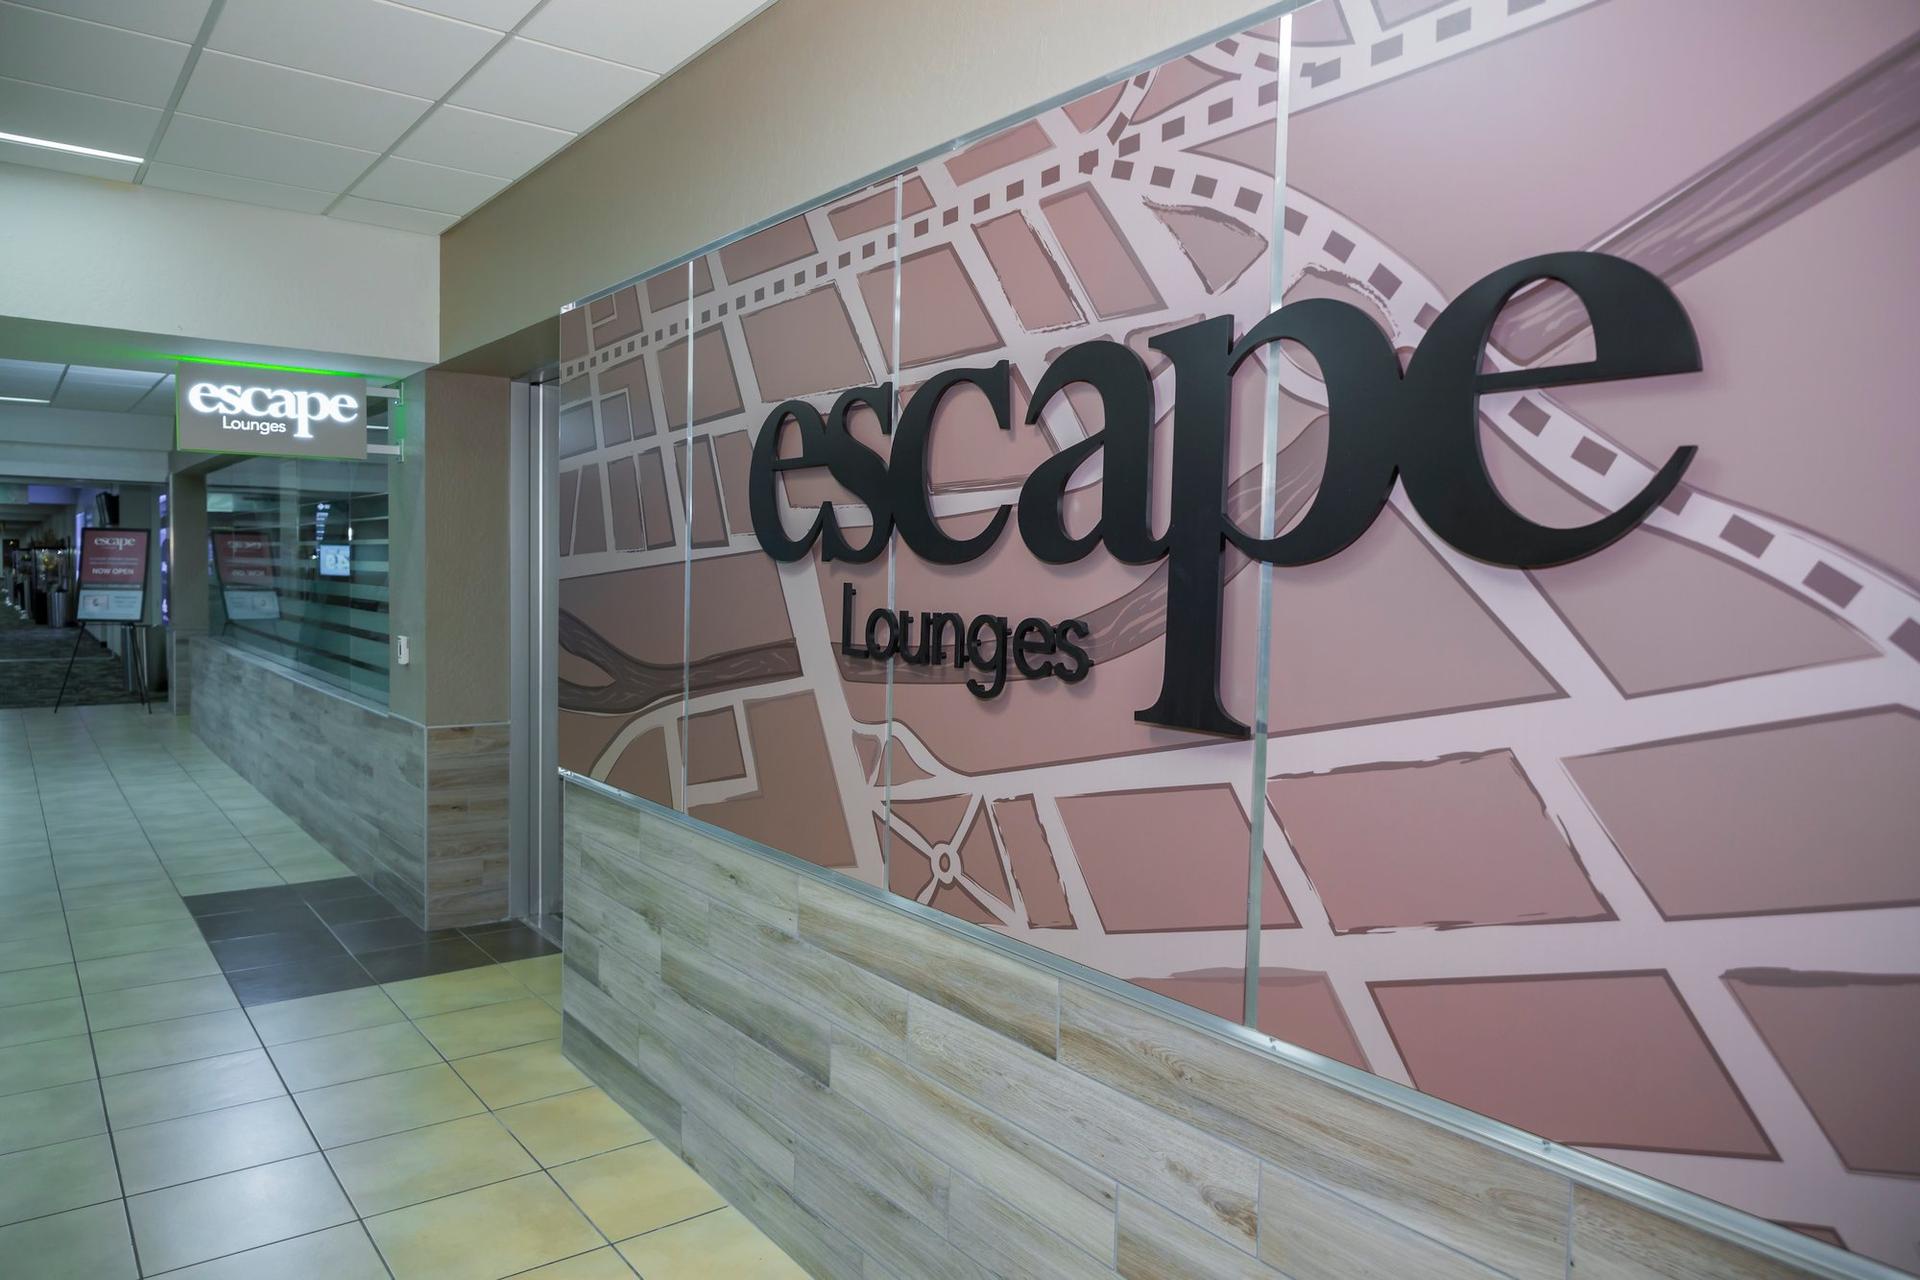 Escape Lounges - The Centurion® Studio Partner image 21 of 21